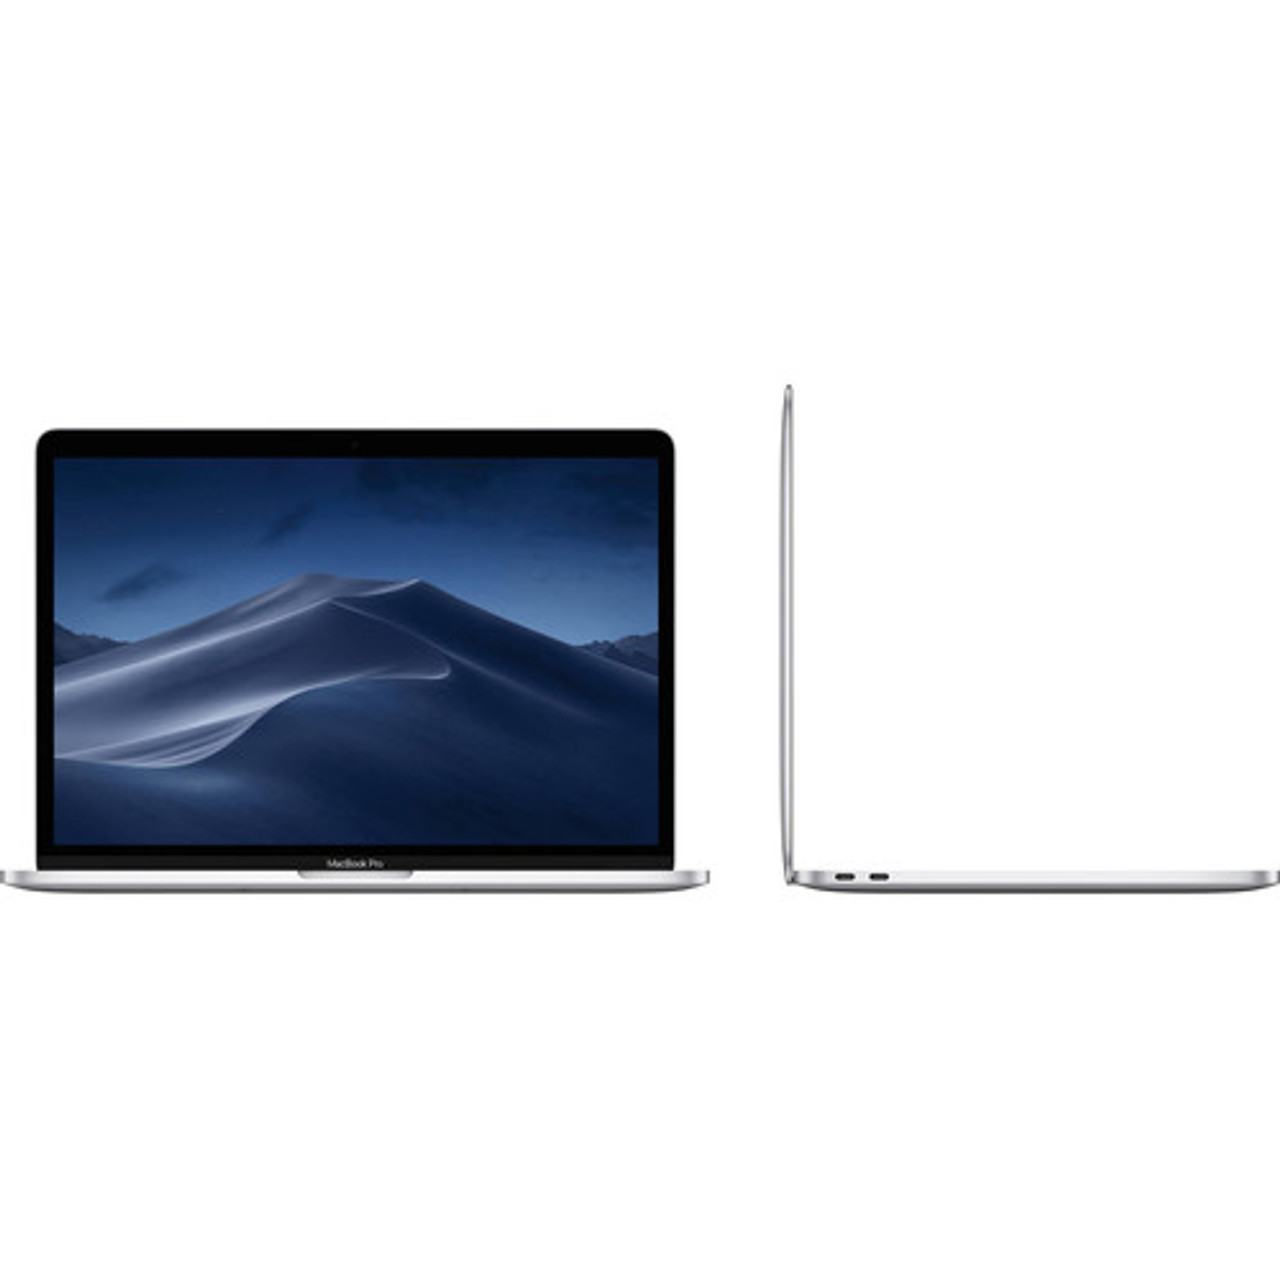 Apple Macbook Pro 13 Intel I5 8gb Ram 256gb Ssd 13 3 Display Mojave